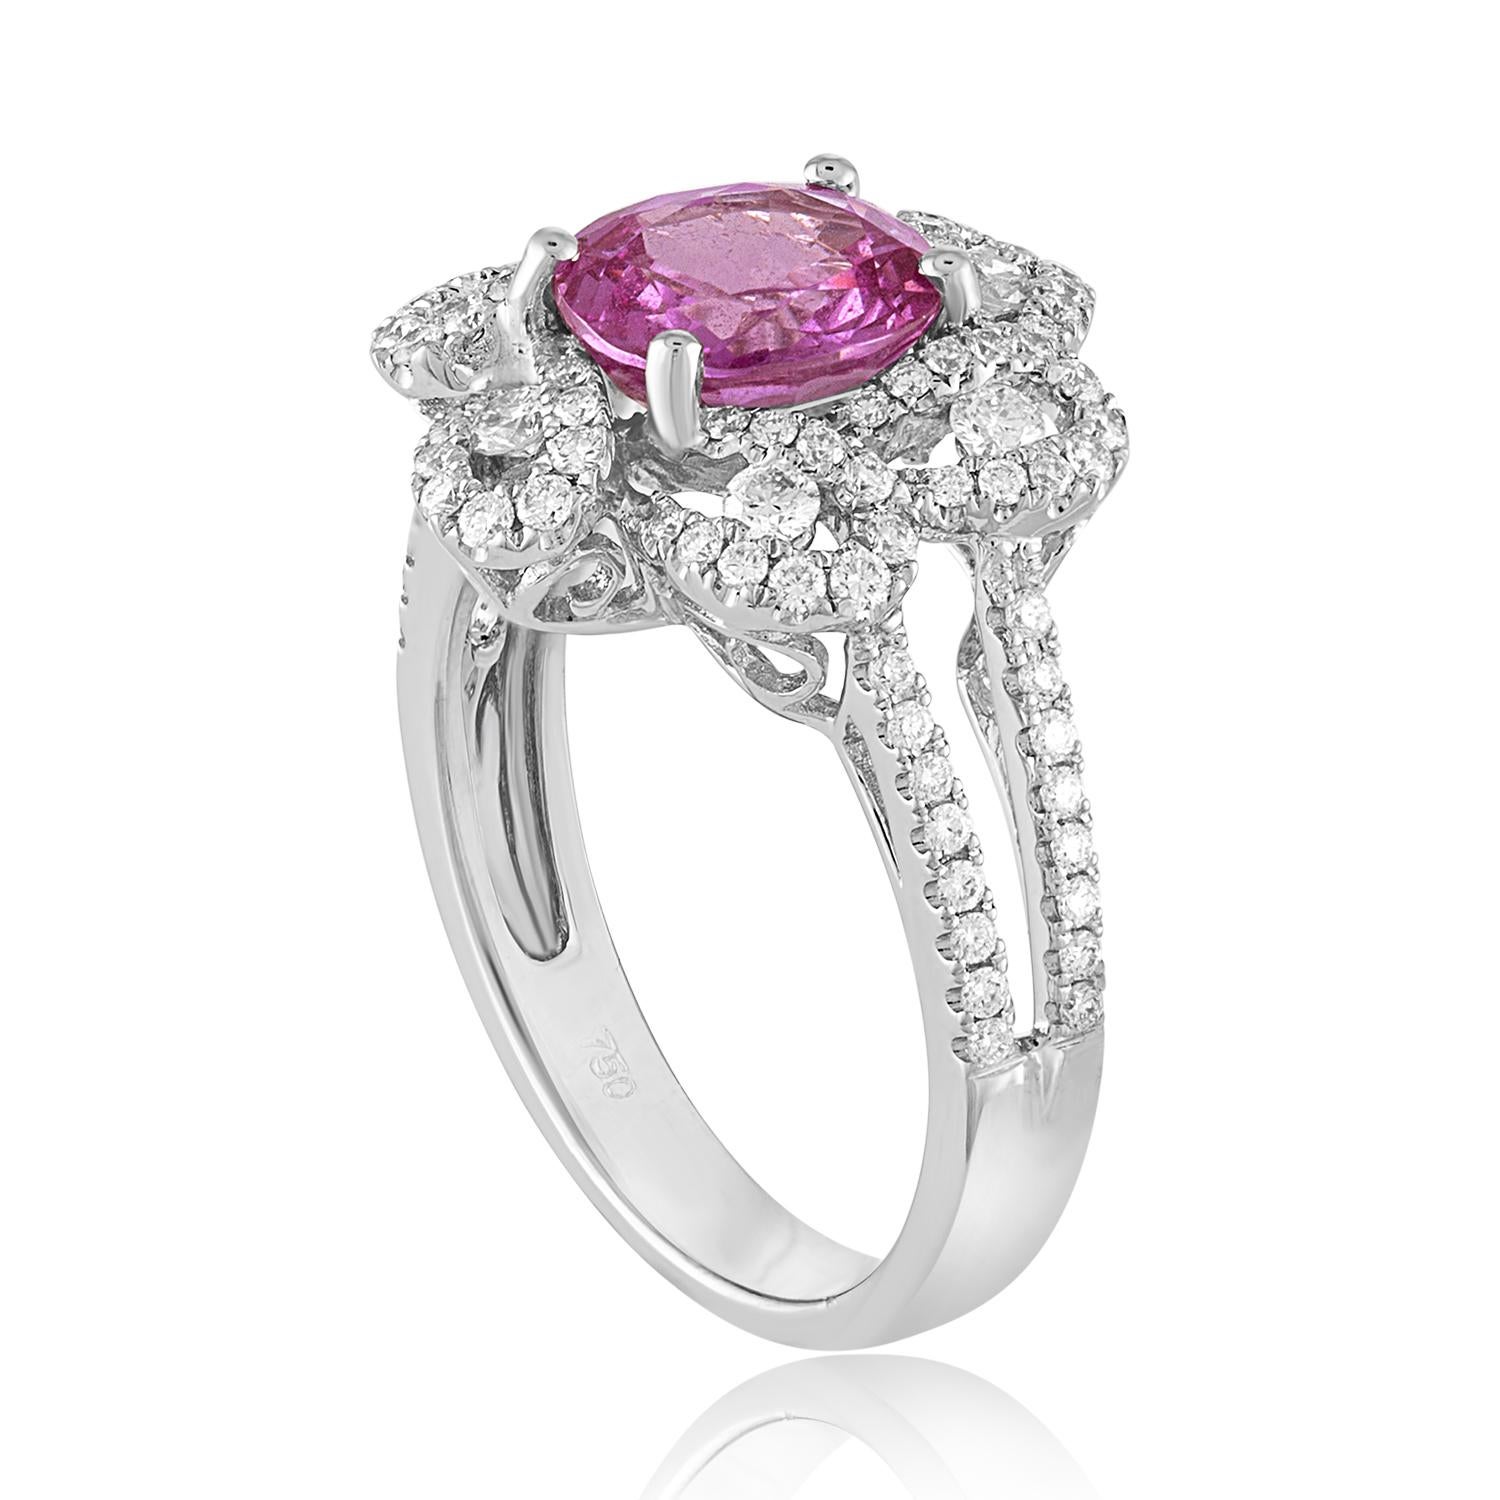 Schöner Blumenring
Der Ring ist aus 18K Weißgold
Der Mittelstein ist ein rosa Cushion Saphir 1,90 Karat HEIZEN
Der Sapphire ist AGL-zertifiziert
Es sind 0,59 Karat in Diamanten F VS
Die Oberseite des Rings ist 15,72 mm breit.
Der Ring ist eine Größe